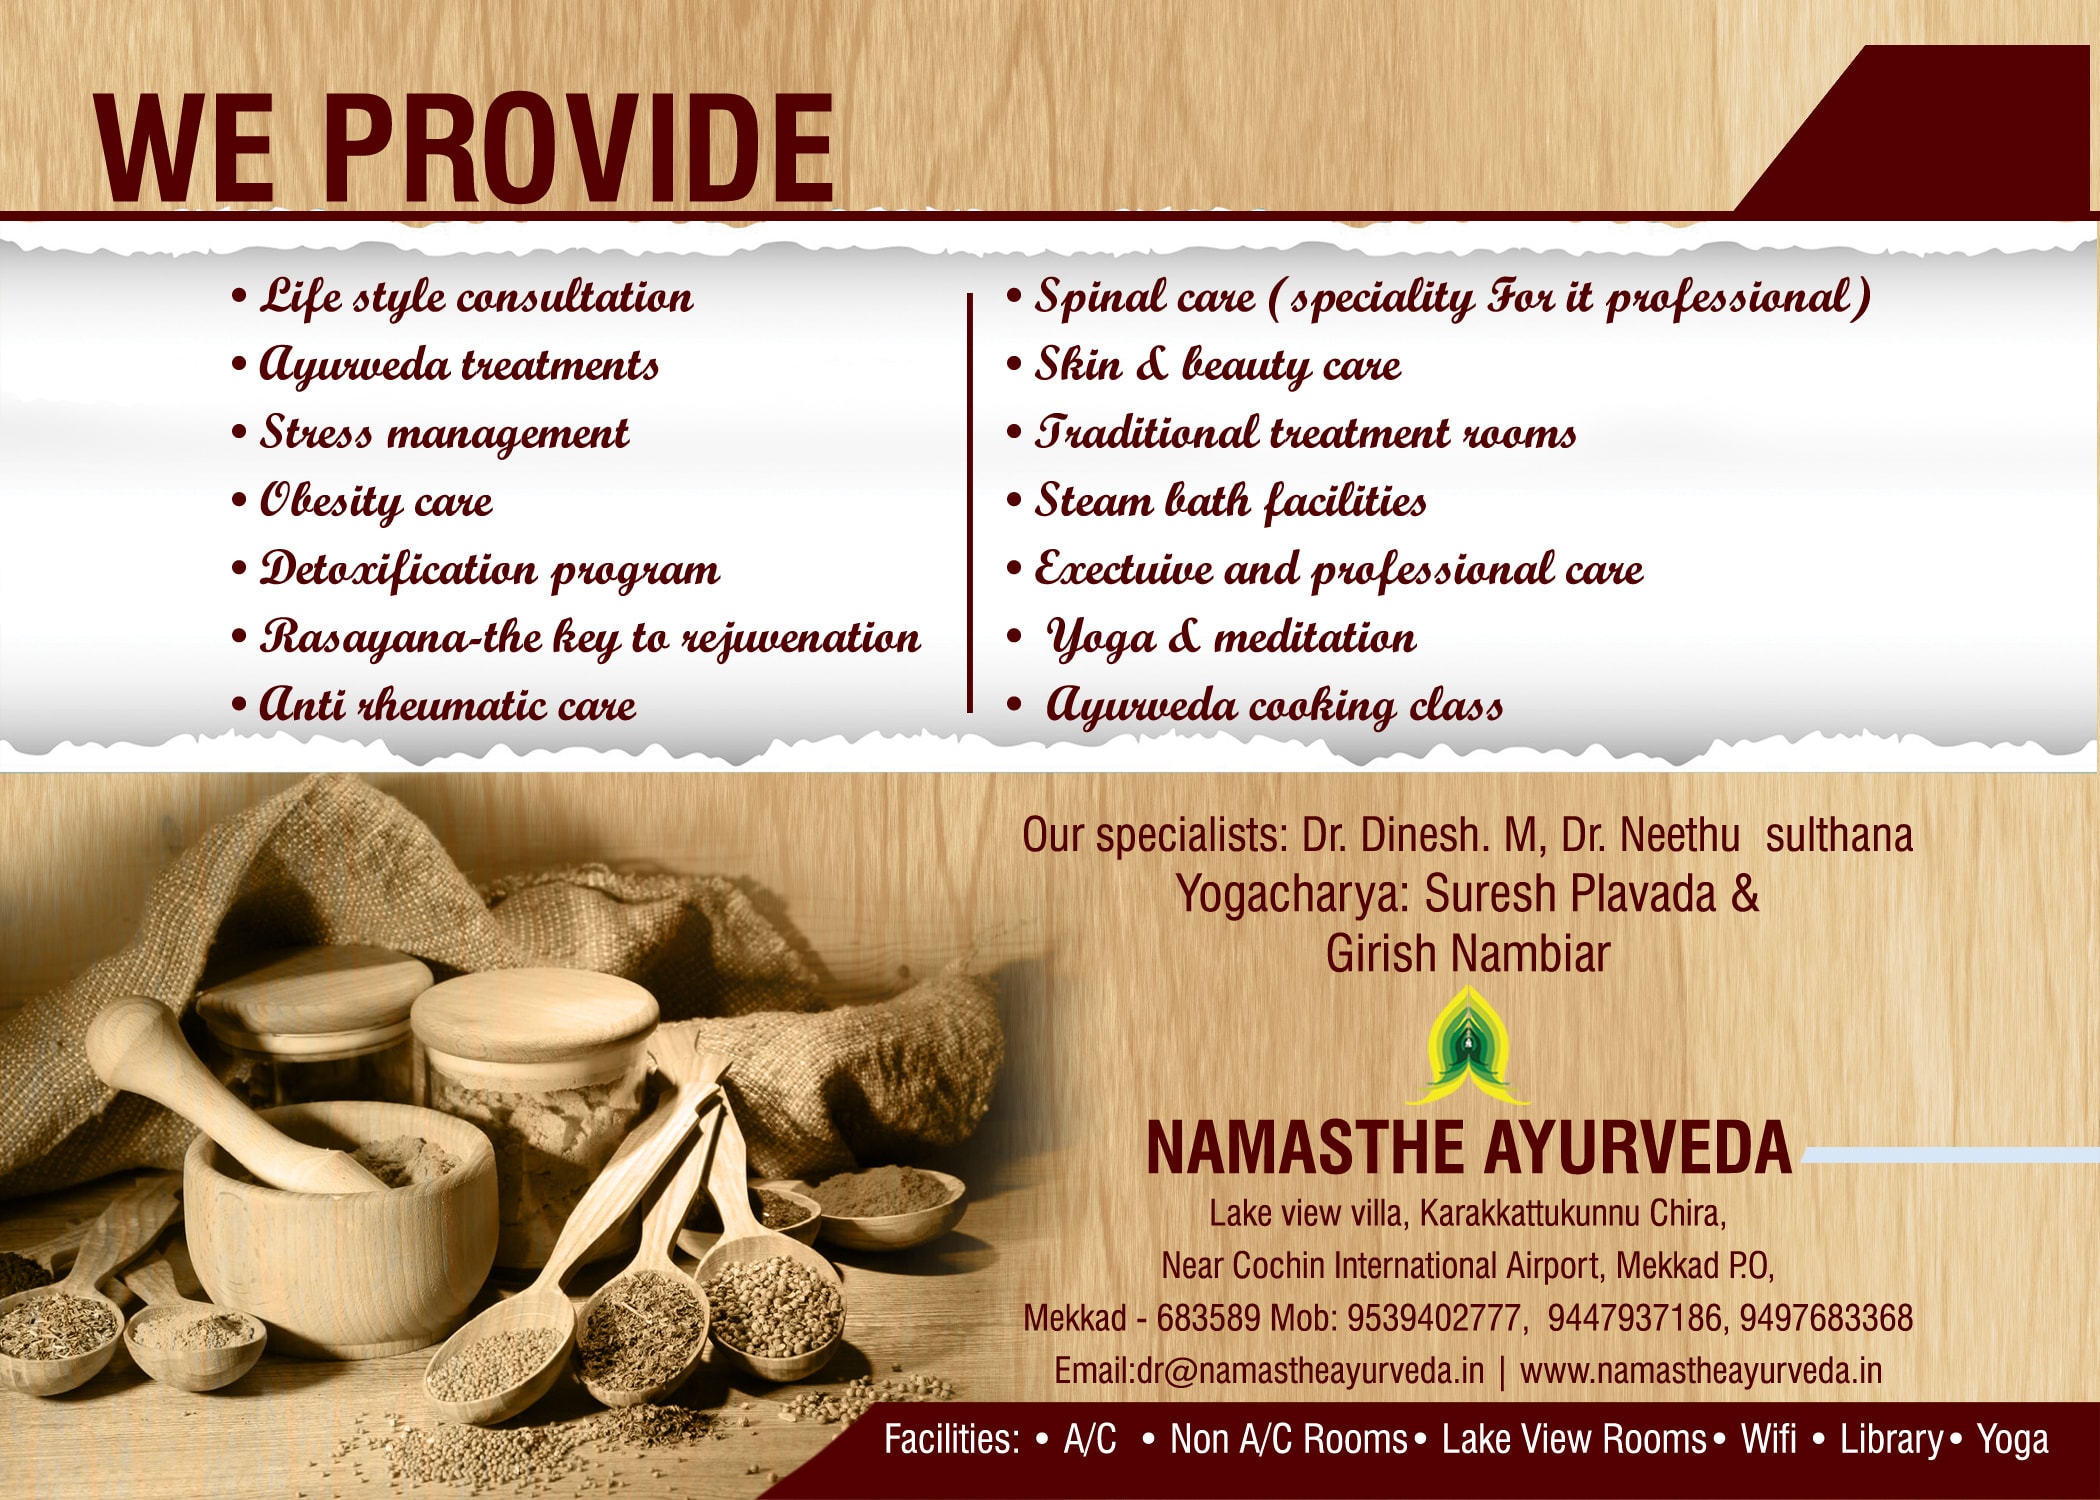 Namasthe ayurveda we provide